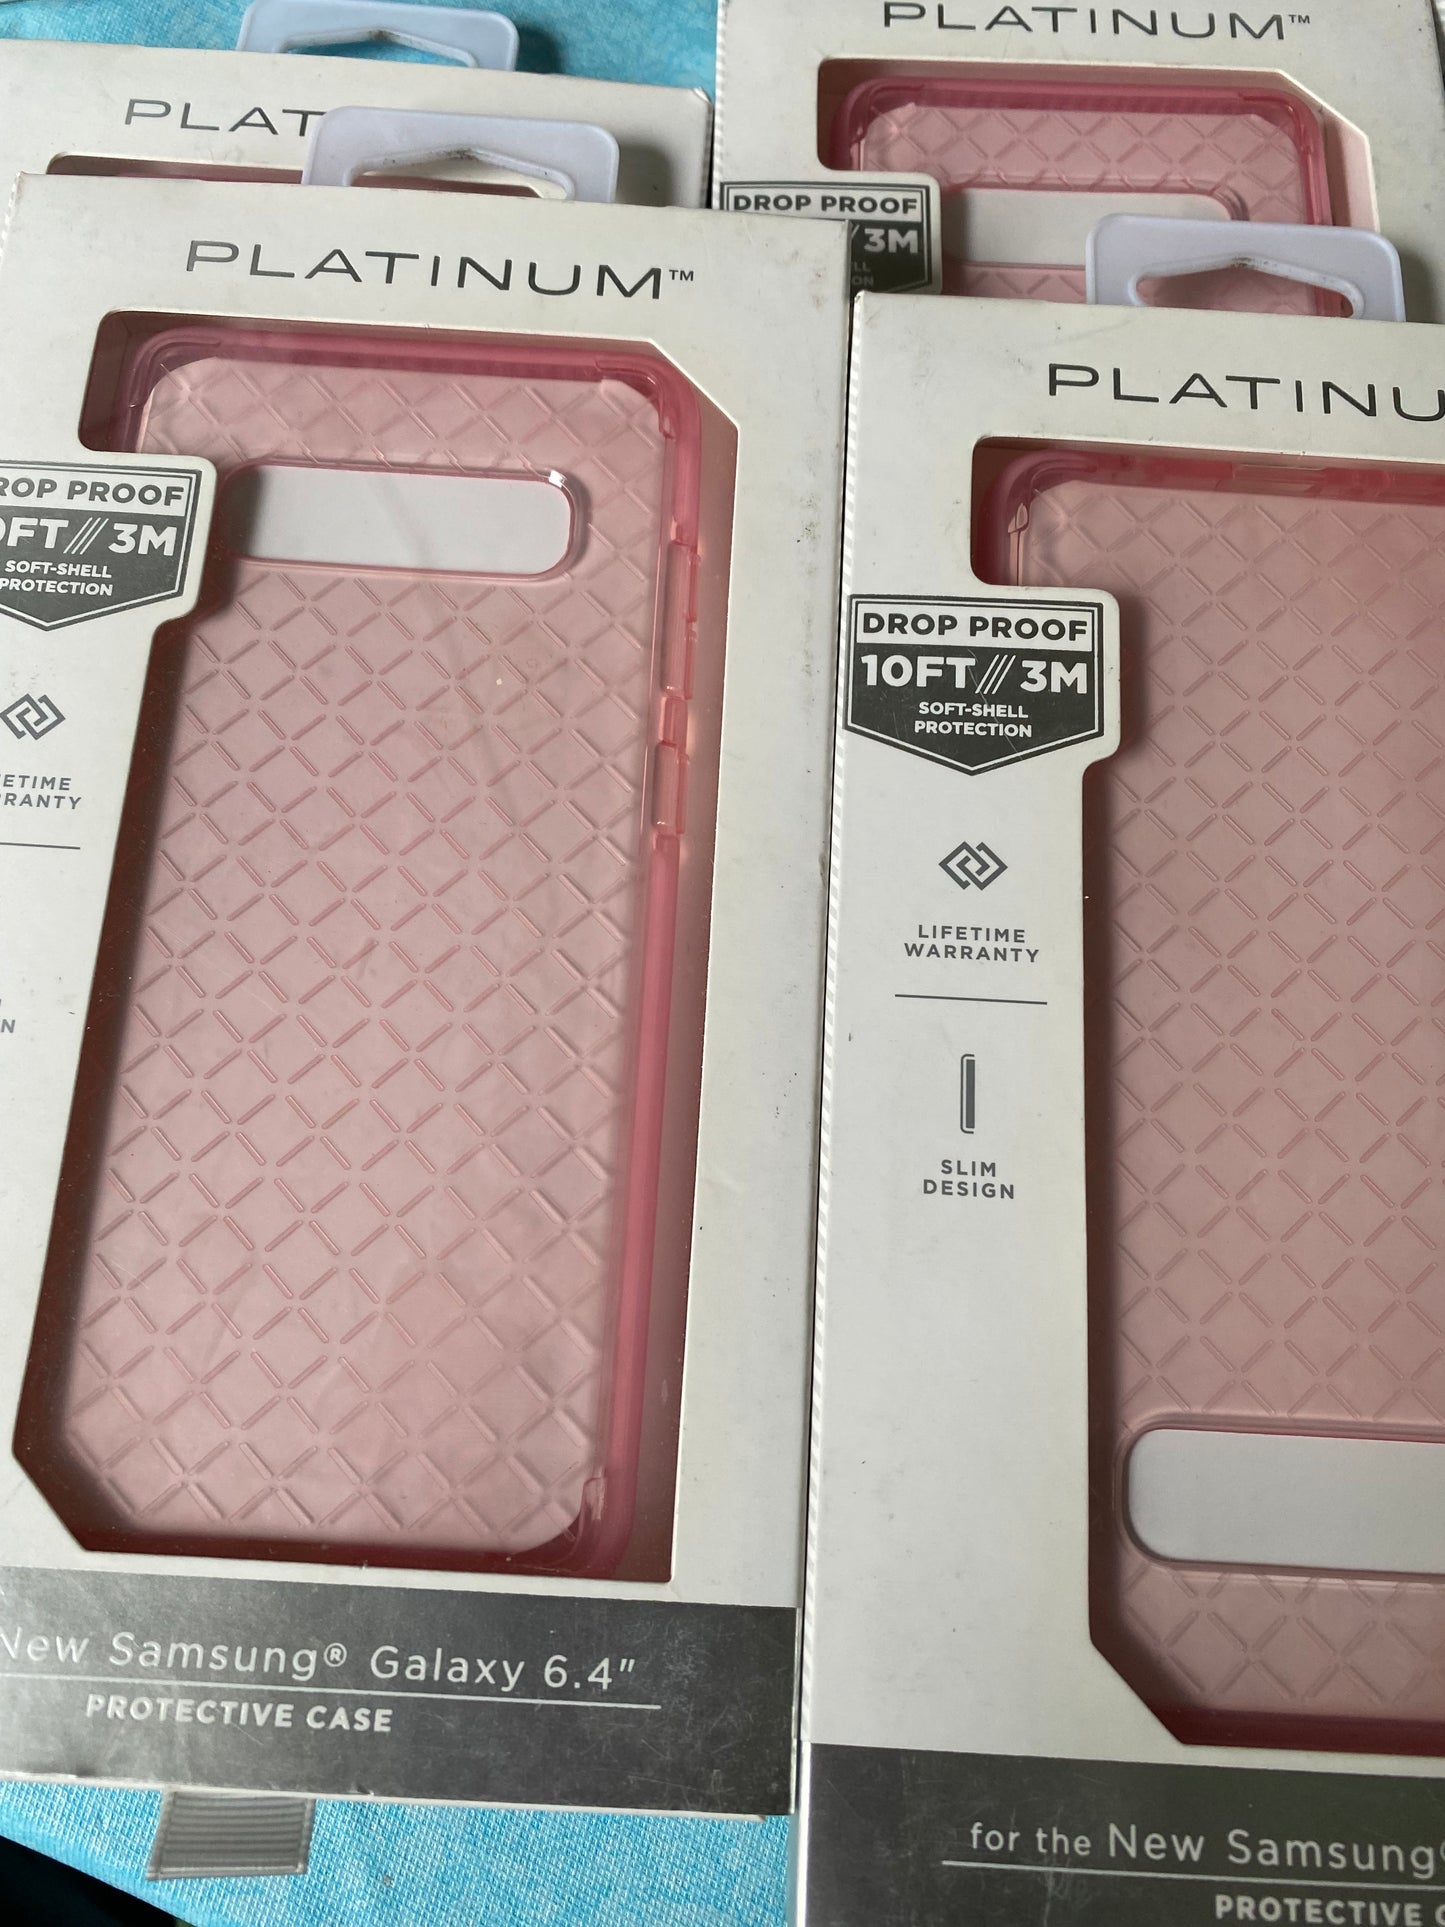 Platinum Smartphone Cases